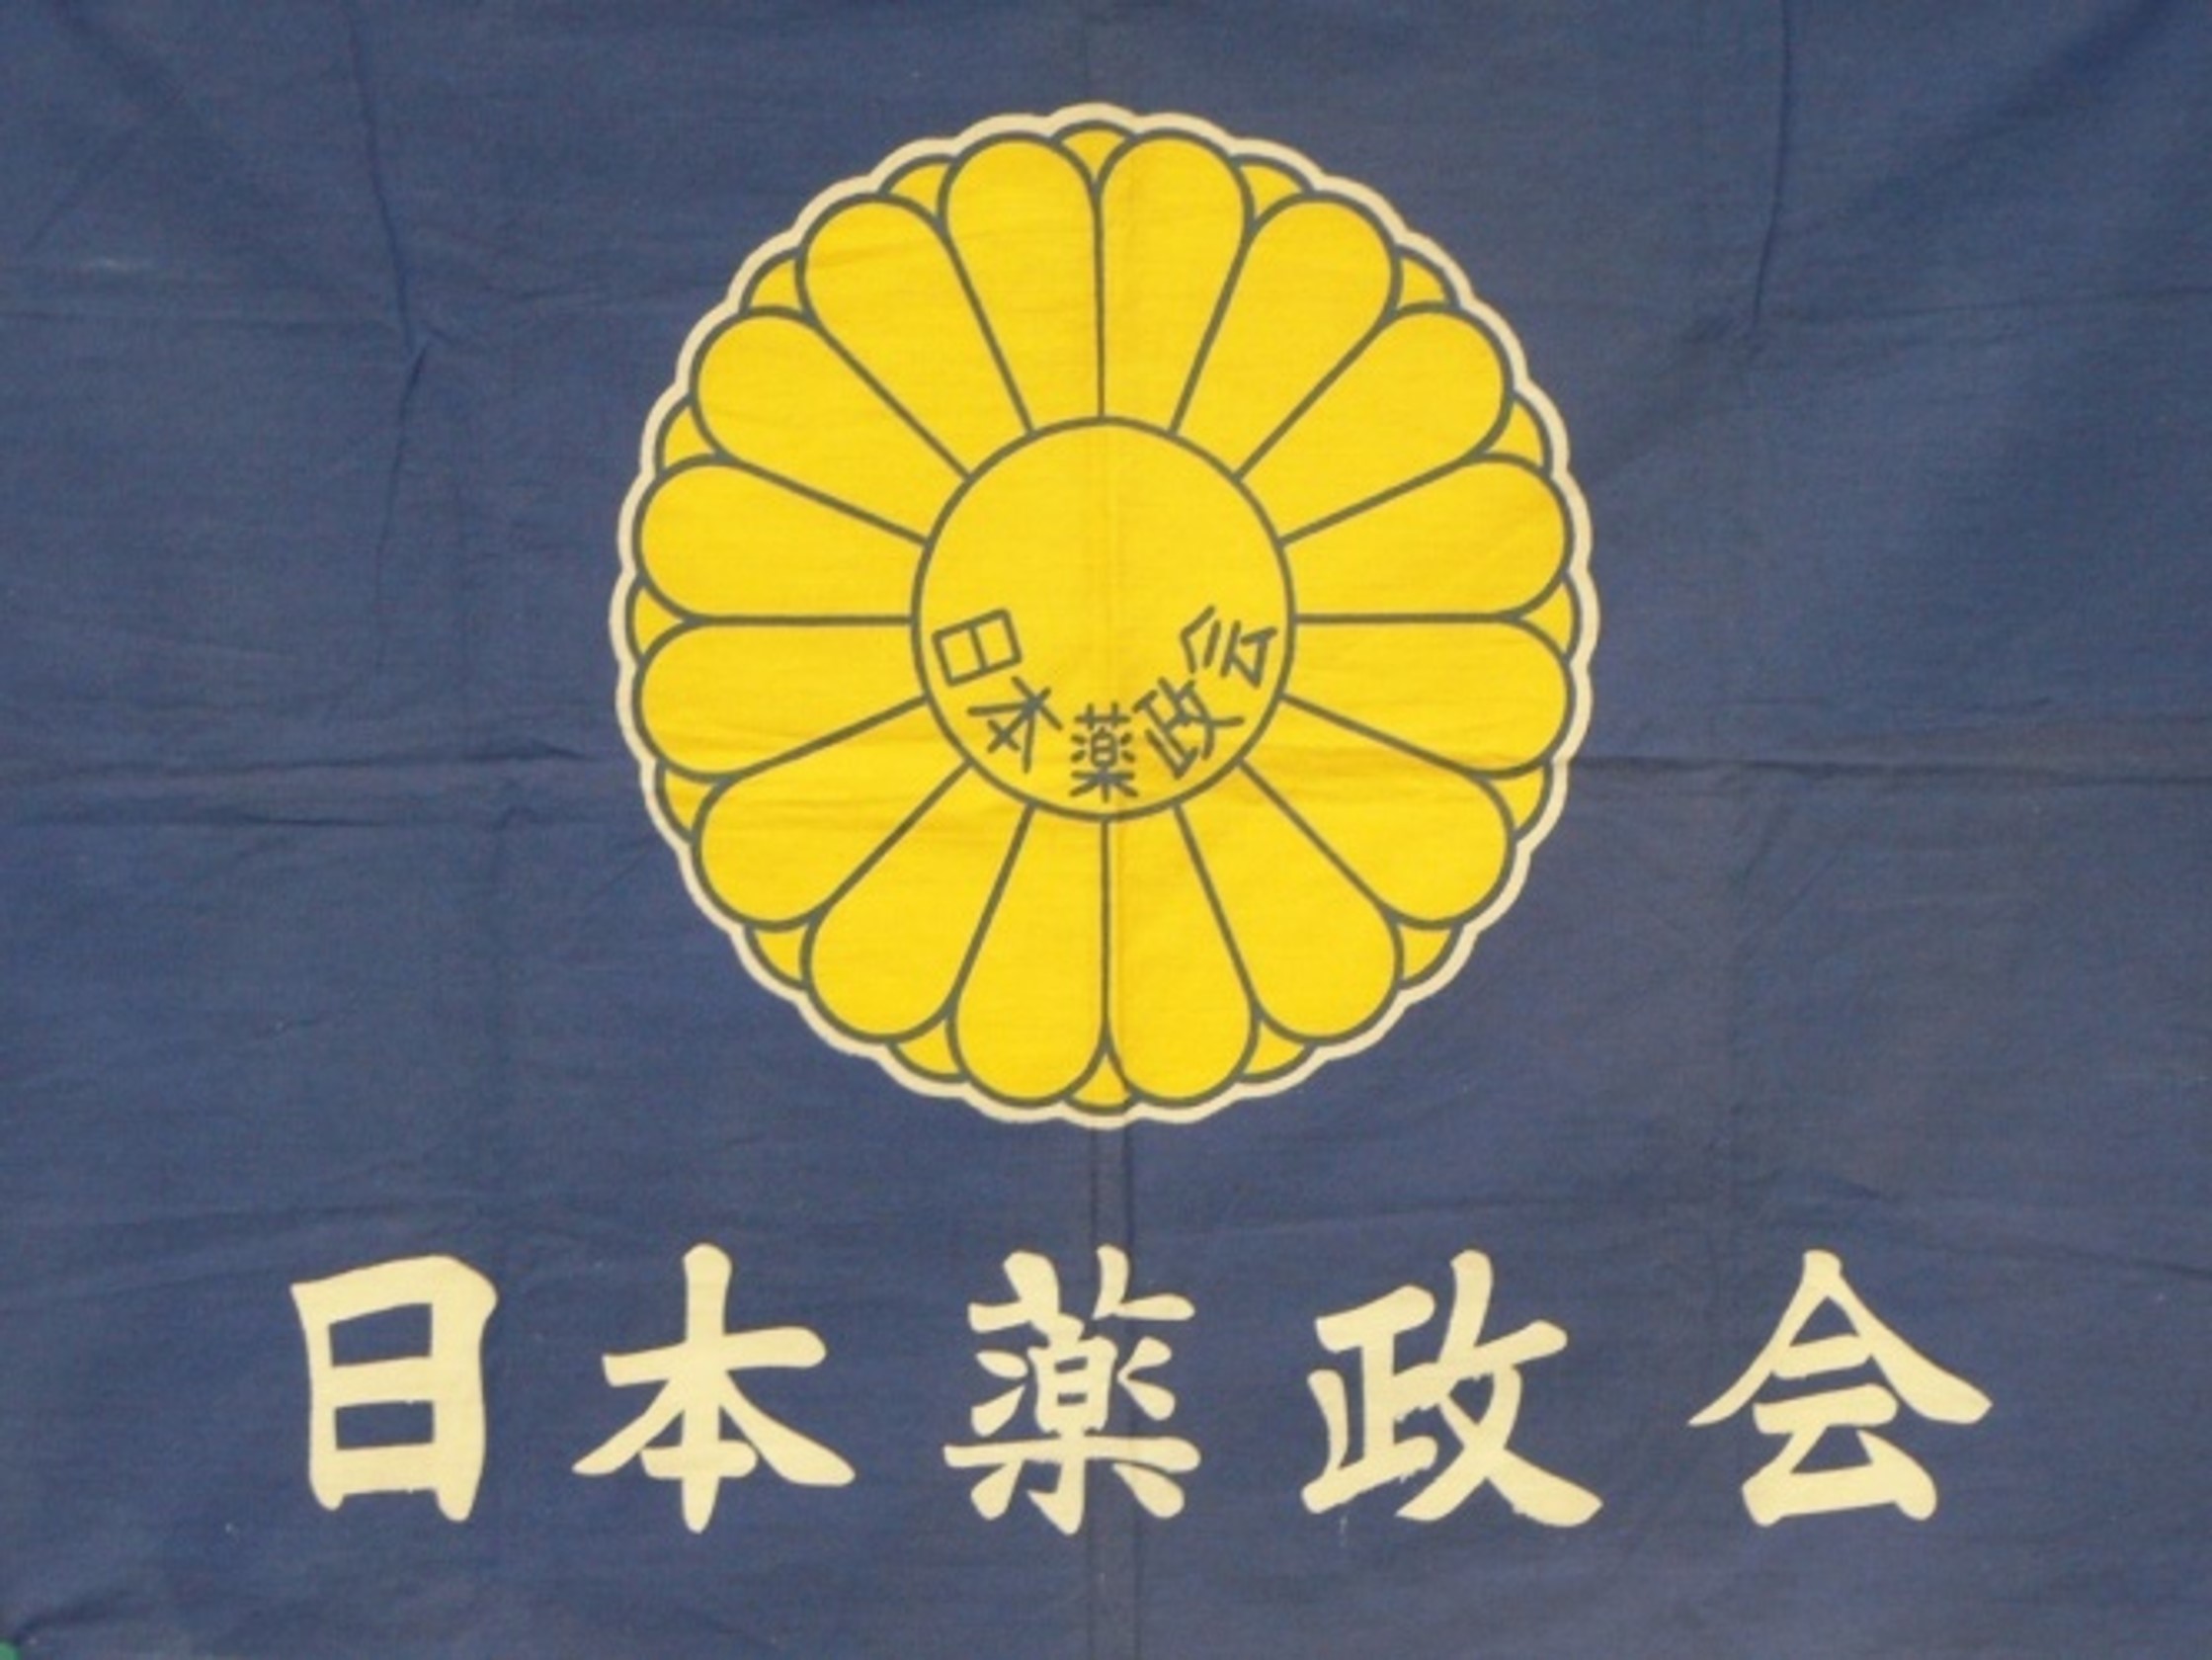 日本薬政会の旗